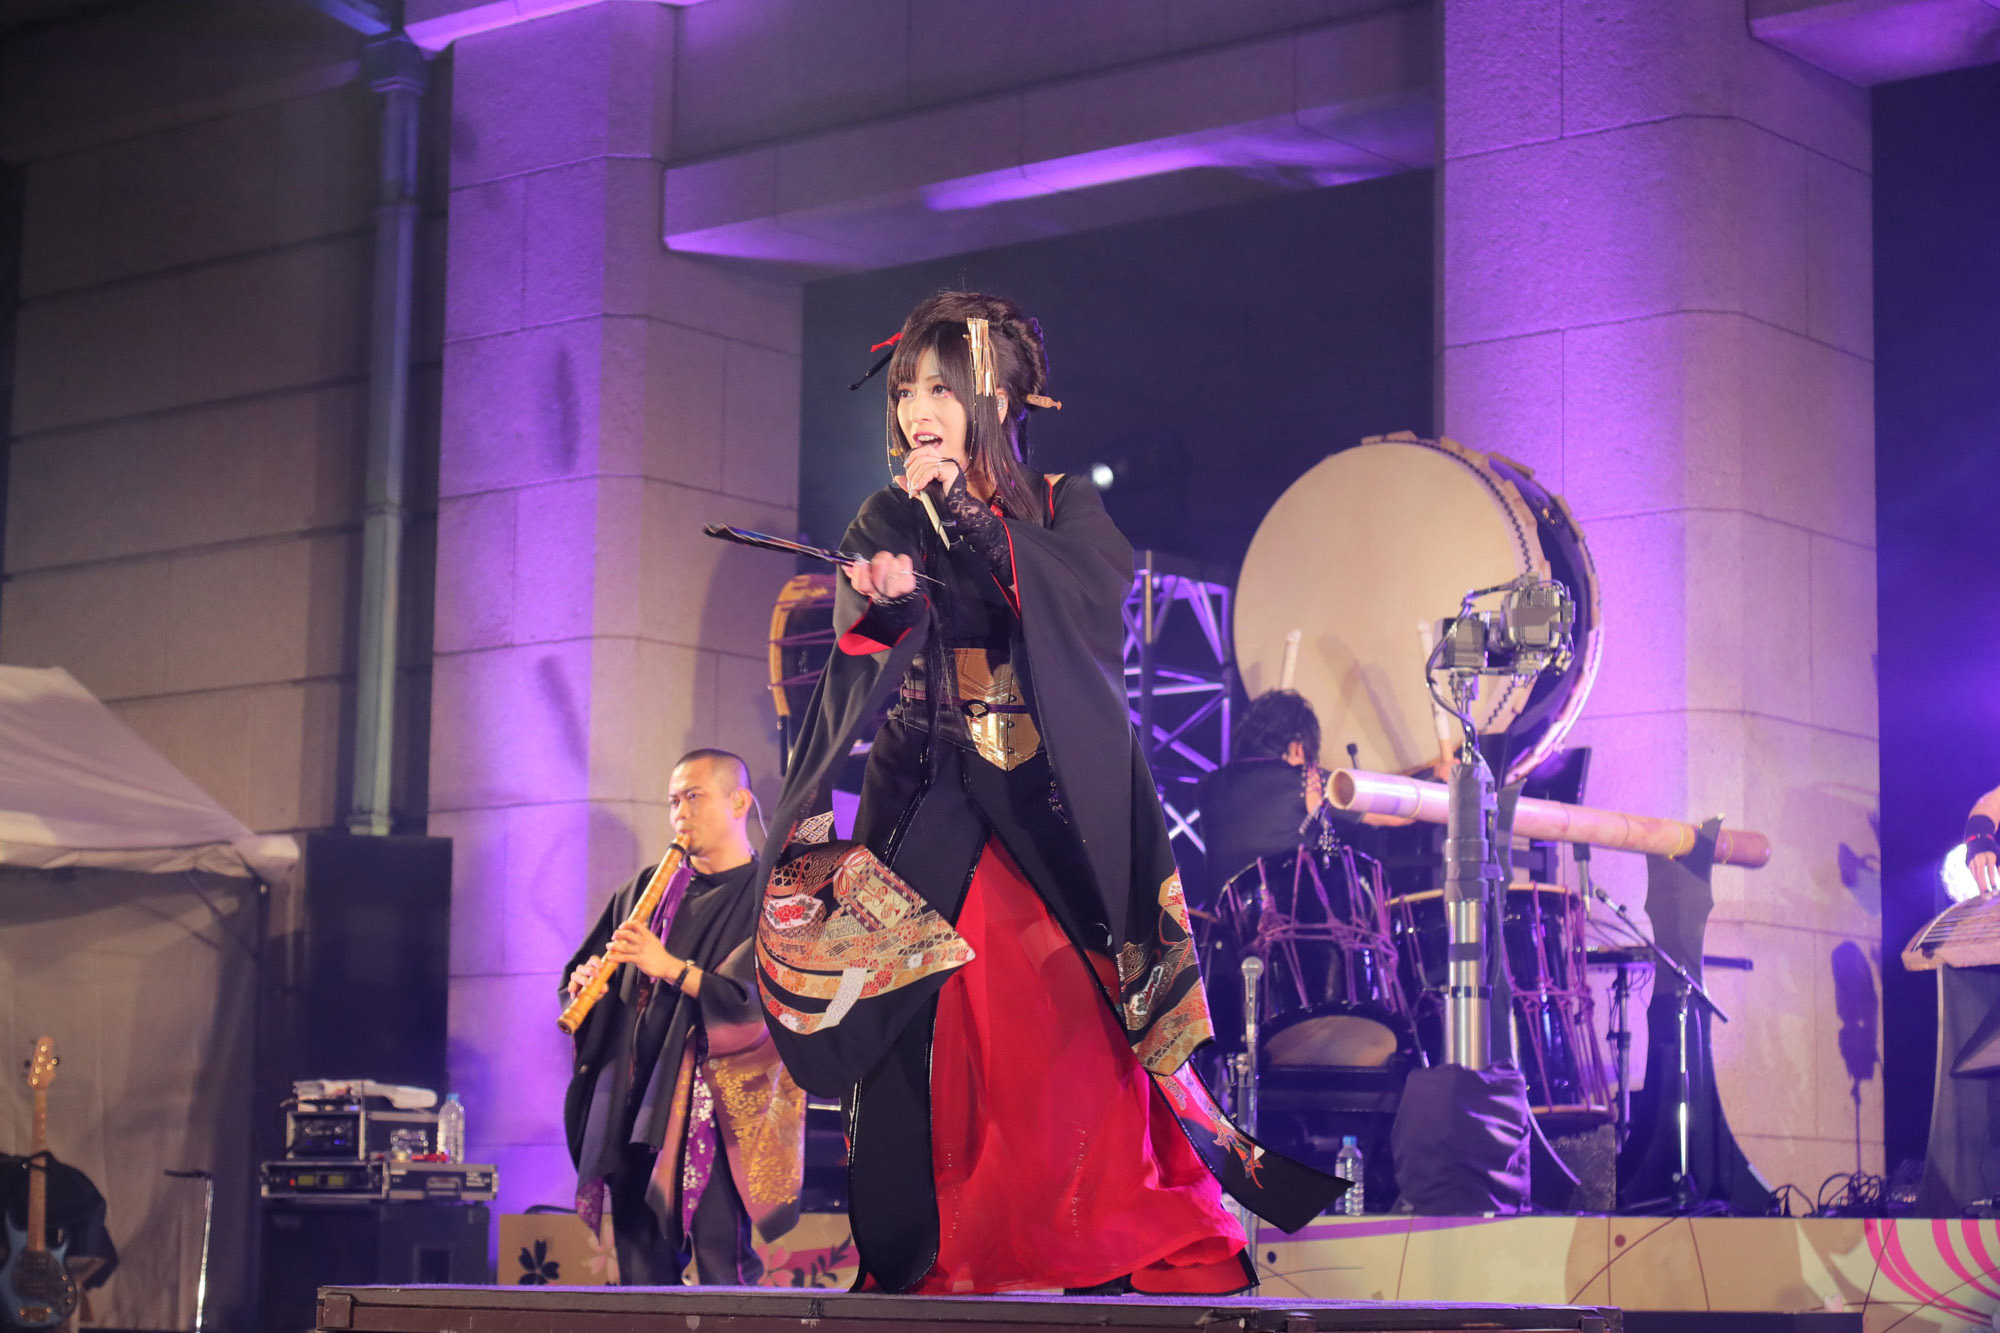 和楽器バンドの“伝統コラボレーション”に6,500人が熱狂 初のフリーライブを東京国立博物館で開催 | SPICE - エンタメ特化型情報